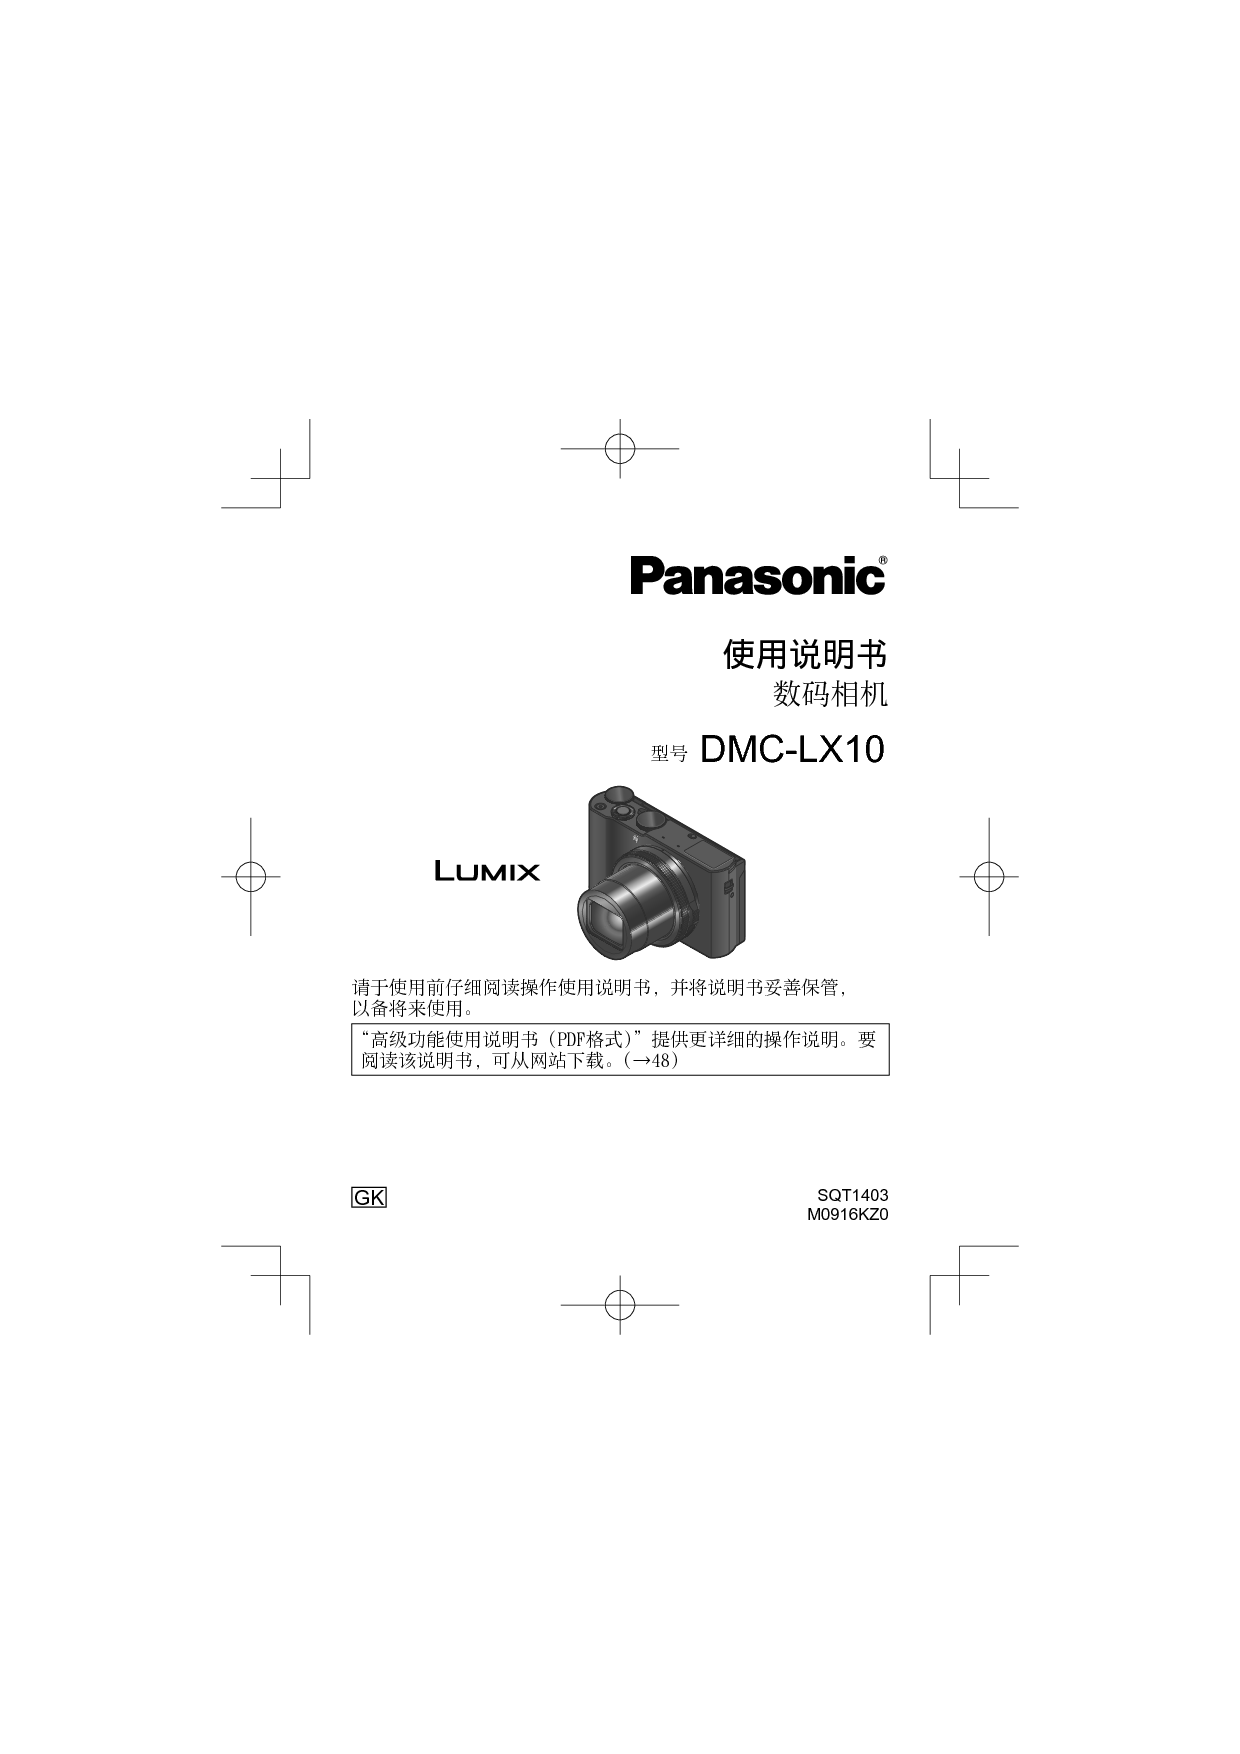 松下 Panasonic DMC-LX10GK 使用说明书 封面